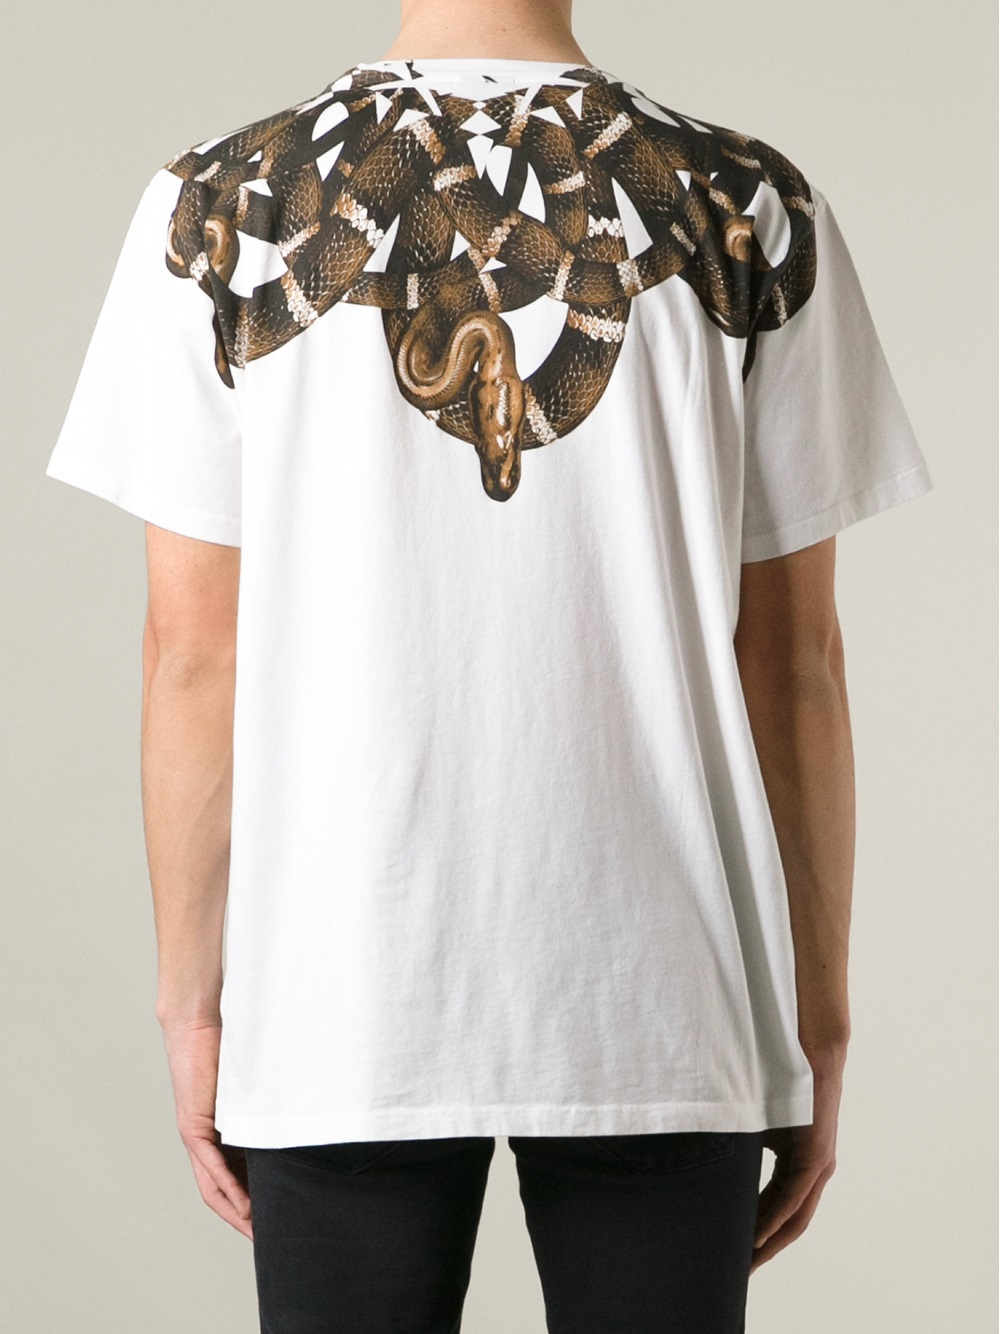 Marcelo Burlon Snake Print Tshirt in White for Men - Lyst